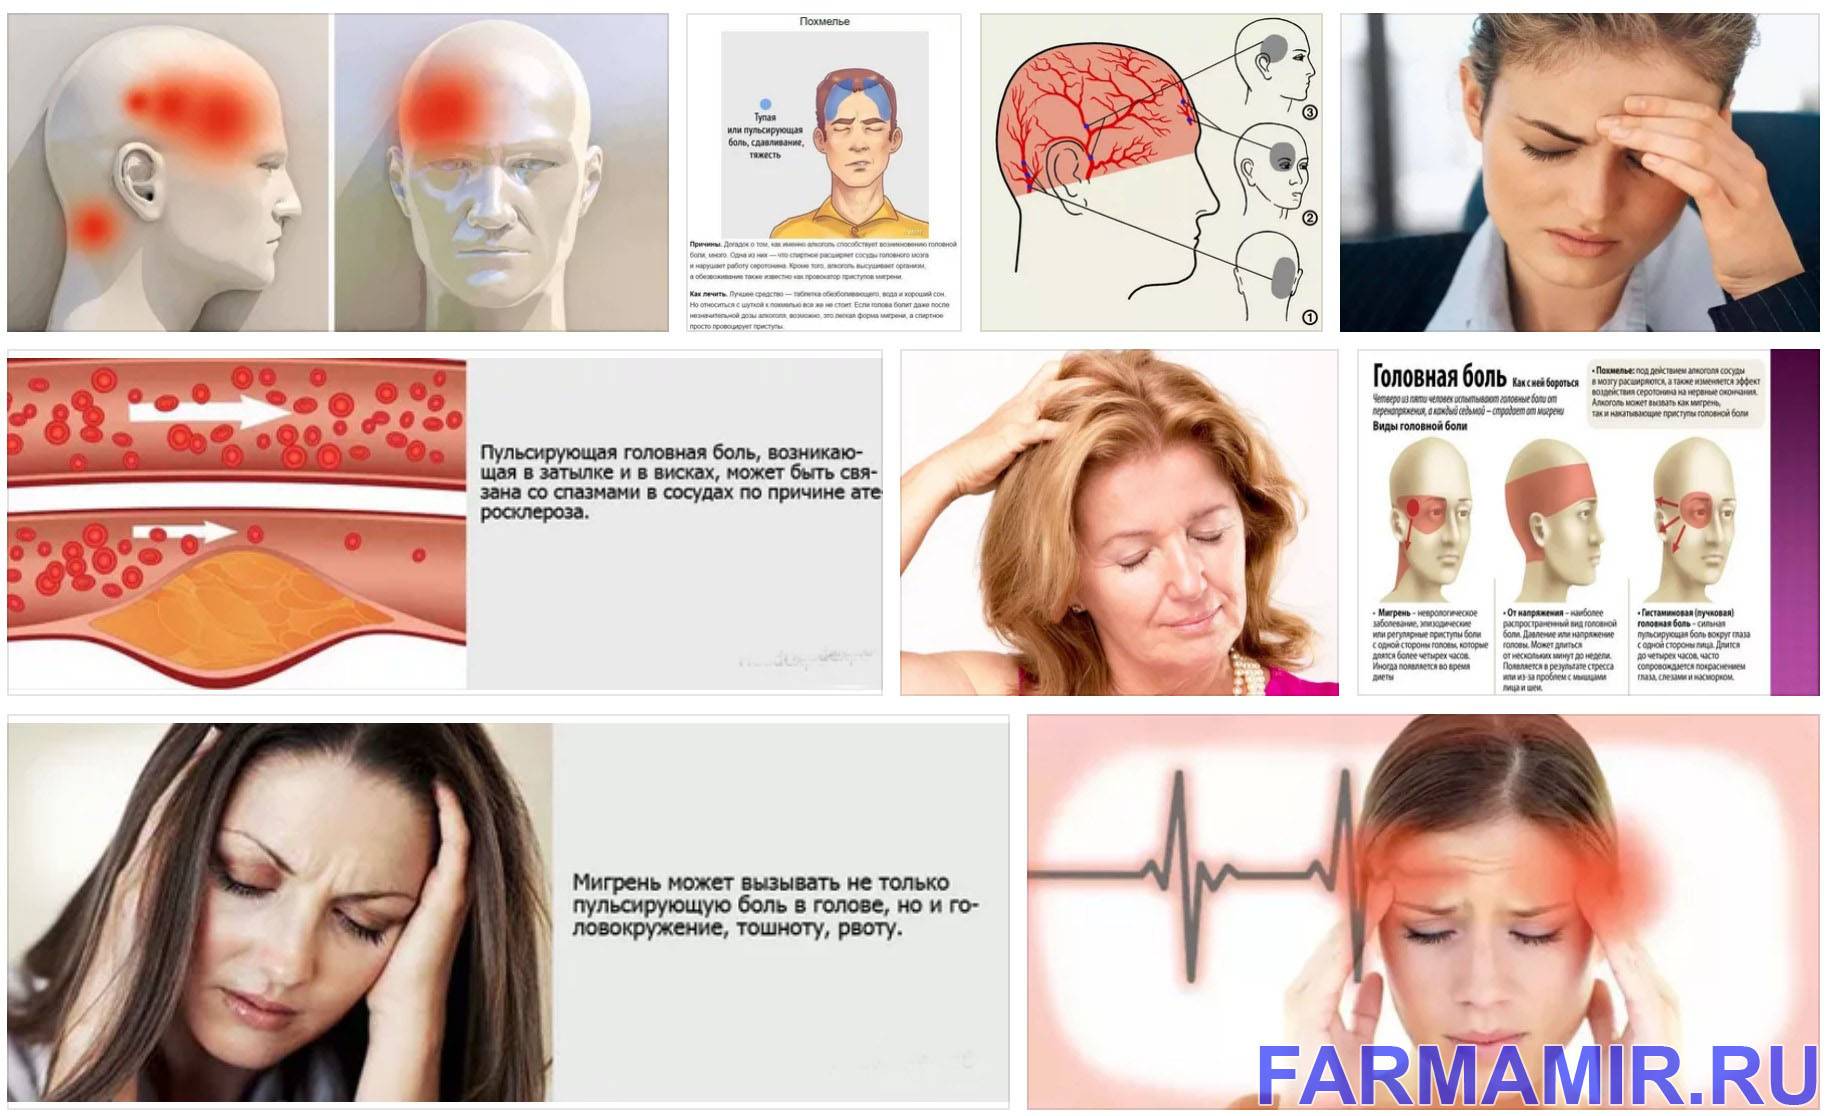 Сильная головная боль в области висков. Пульсирующая головная боль. Причины головной боли. Пульсирующая головная боль в висках. Пульсирует голова и болит.